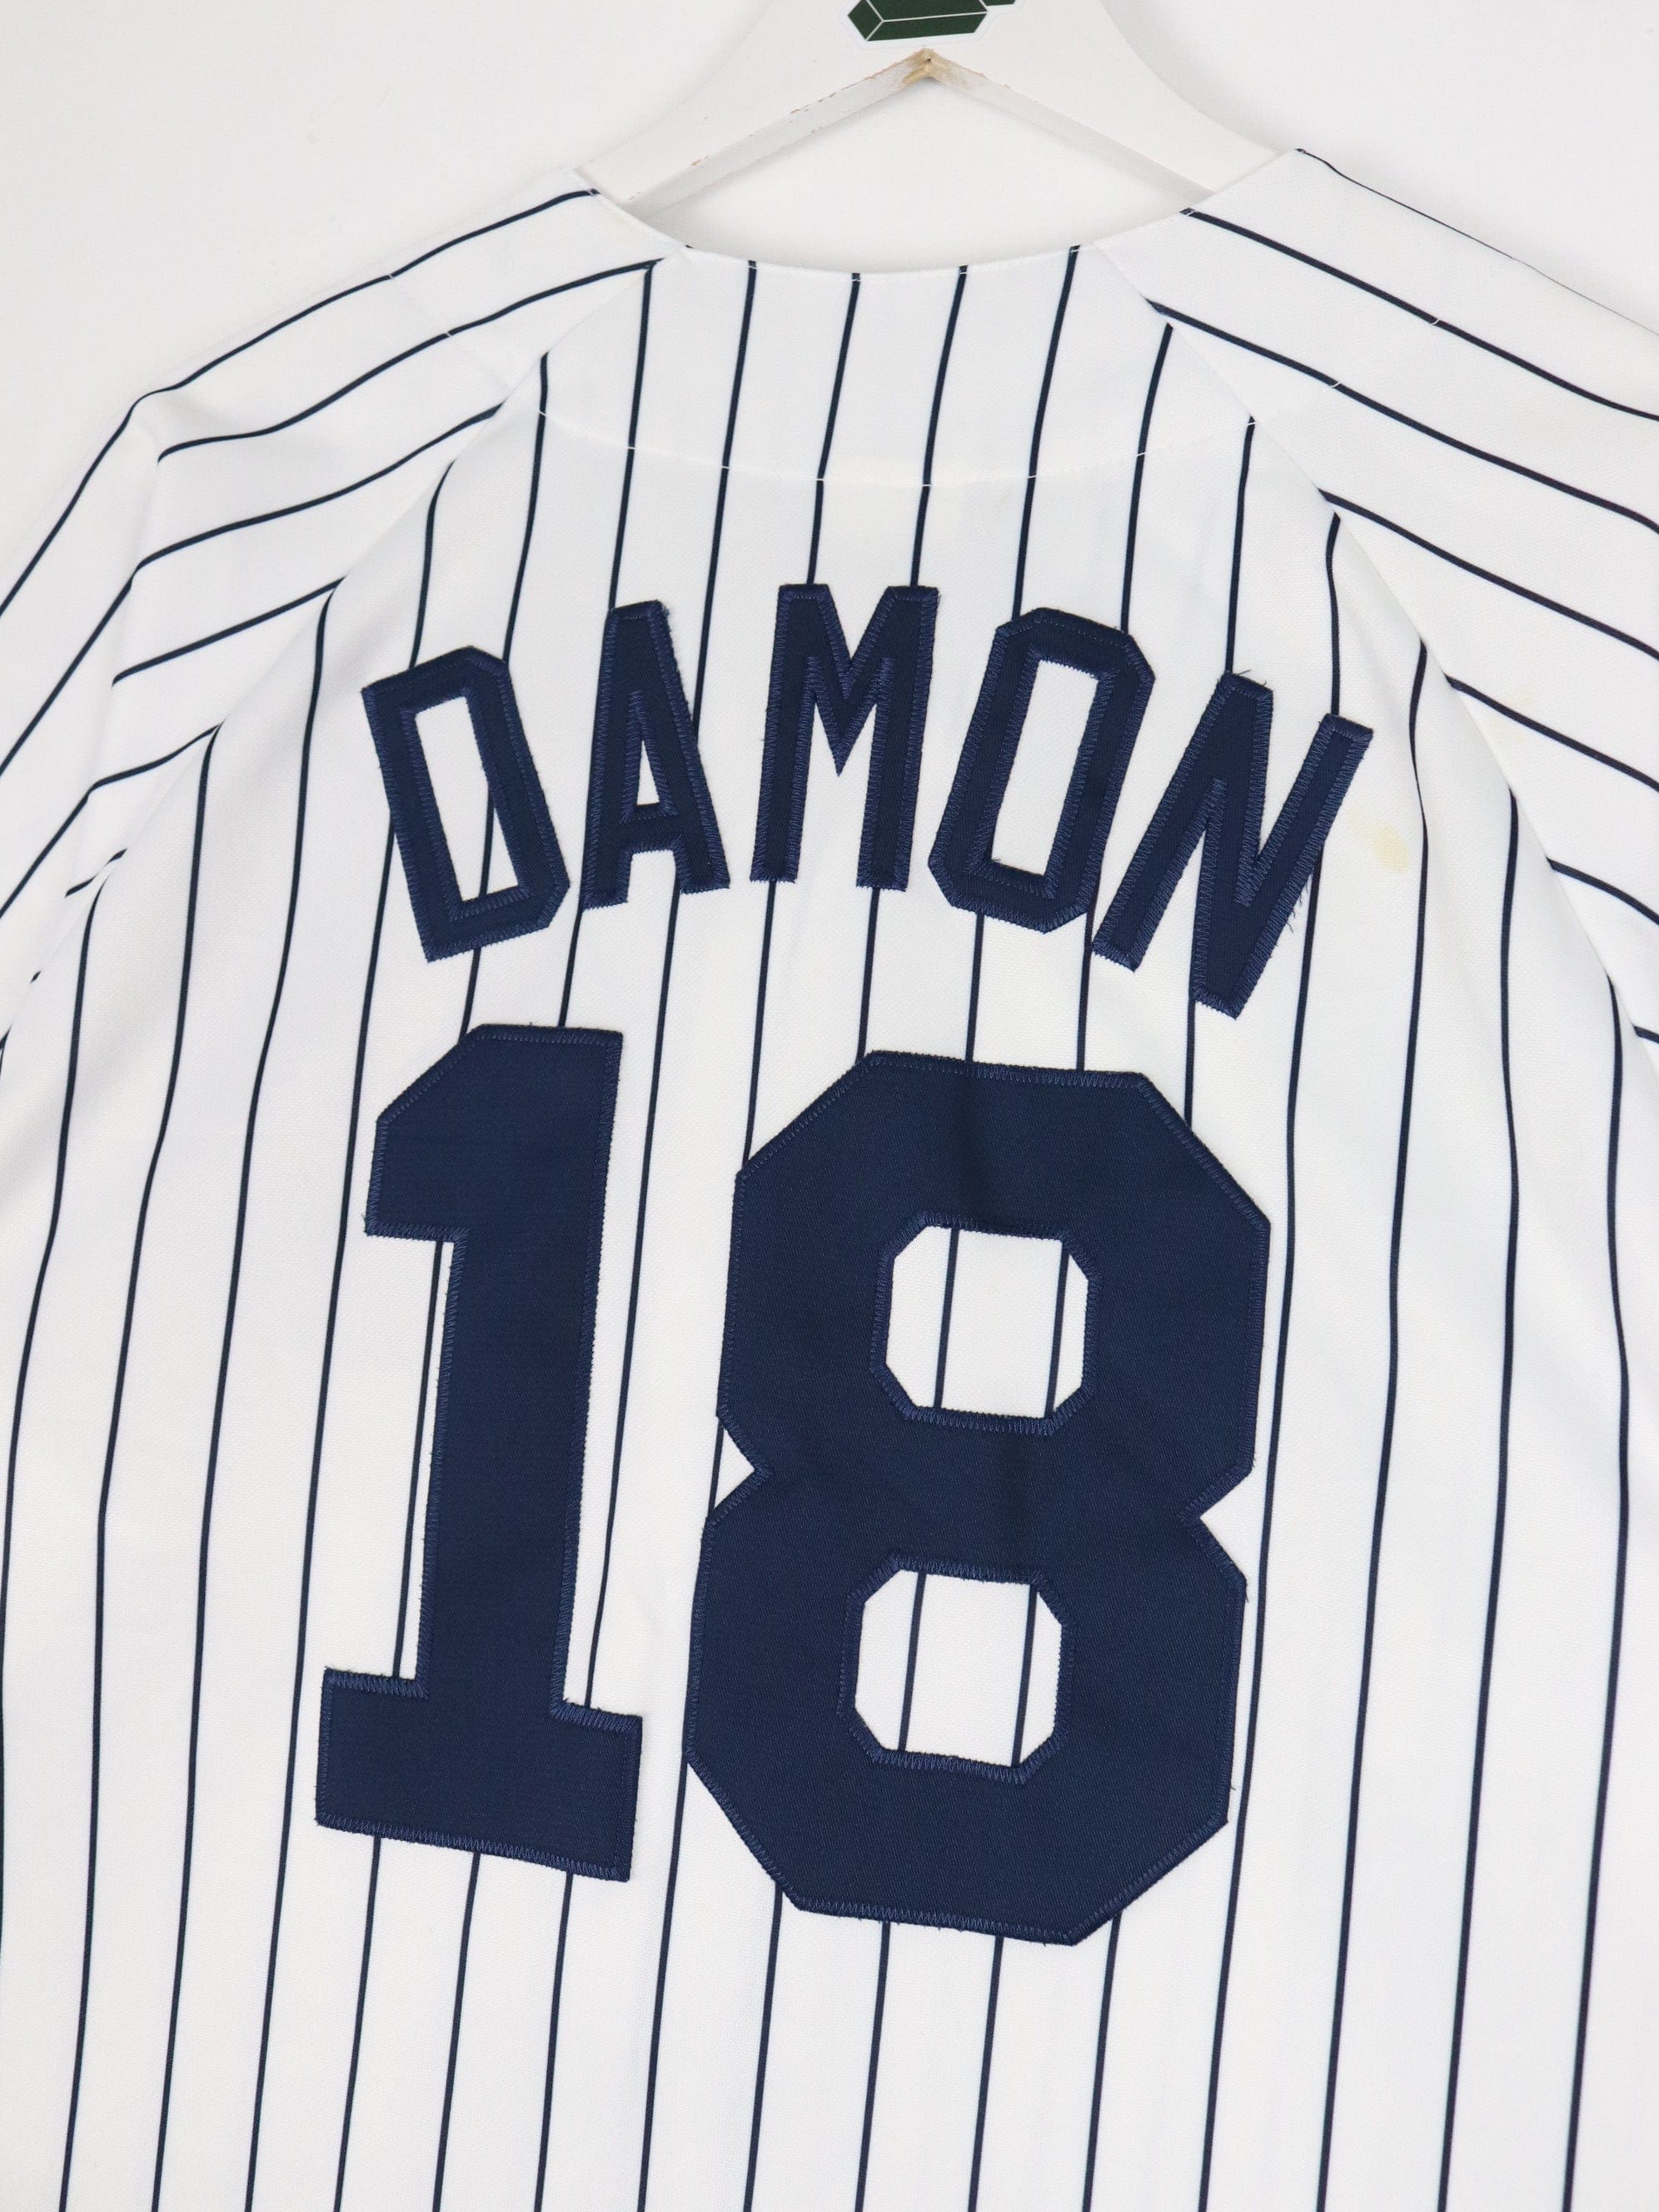 New York Yankees Johnny Damon #18 Mlb Baseball Team Logo 3D White Jersey  Style